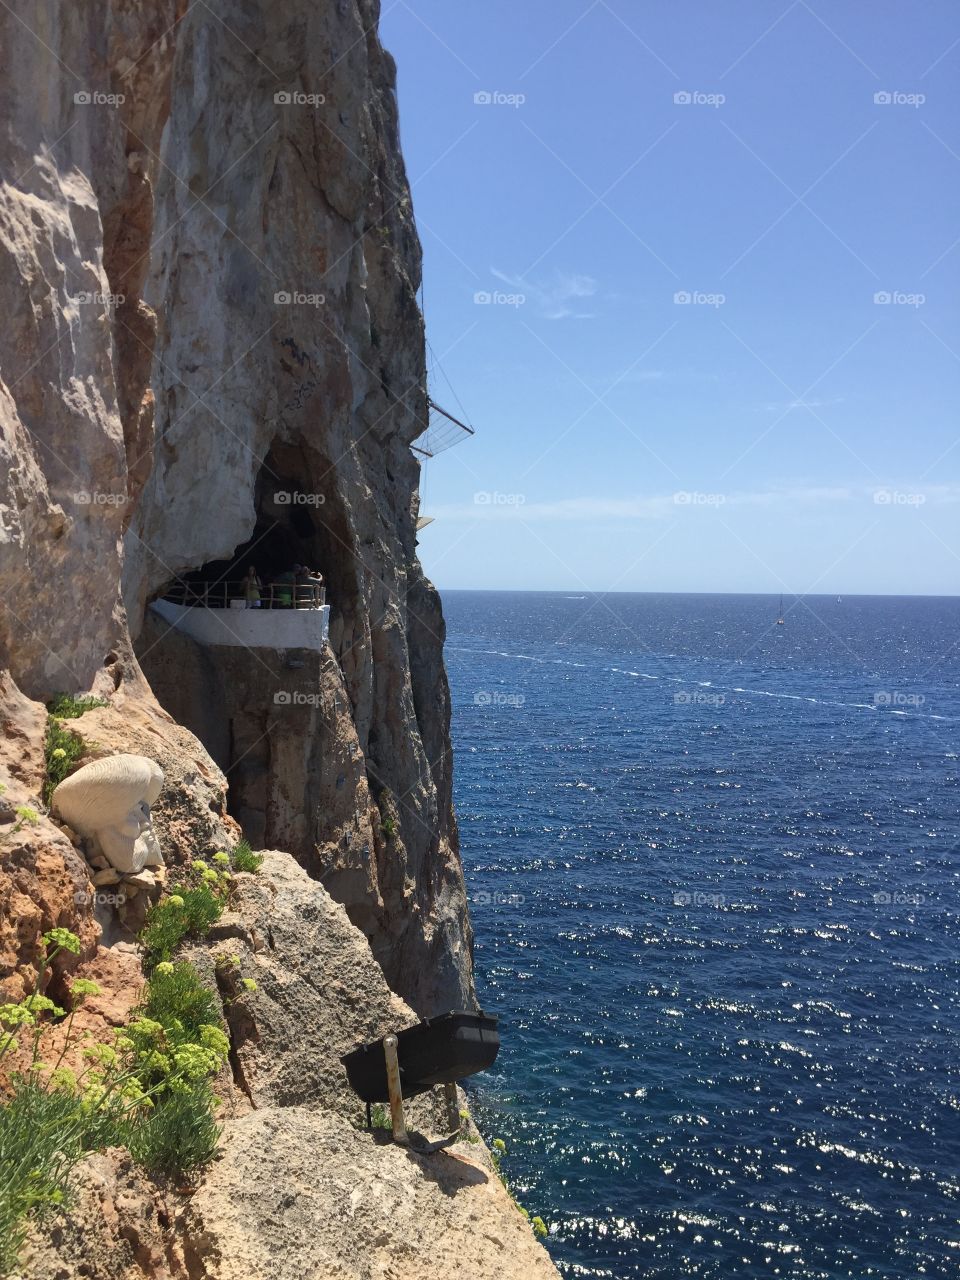 The cova d’en xeroi in Menorca ,islas baleares